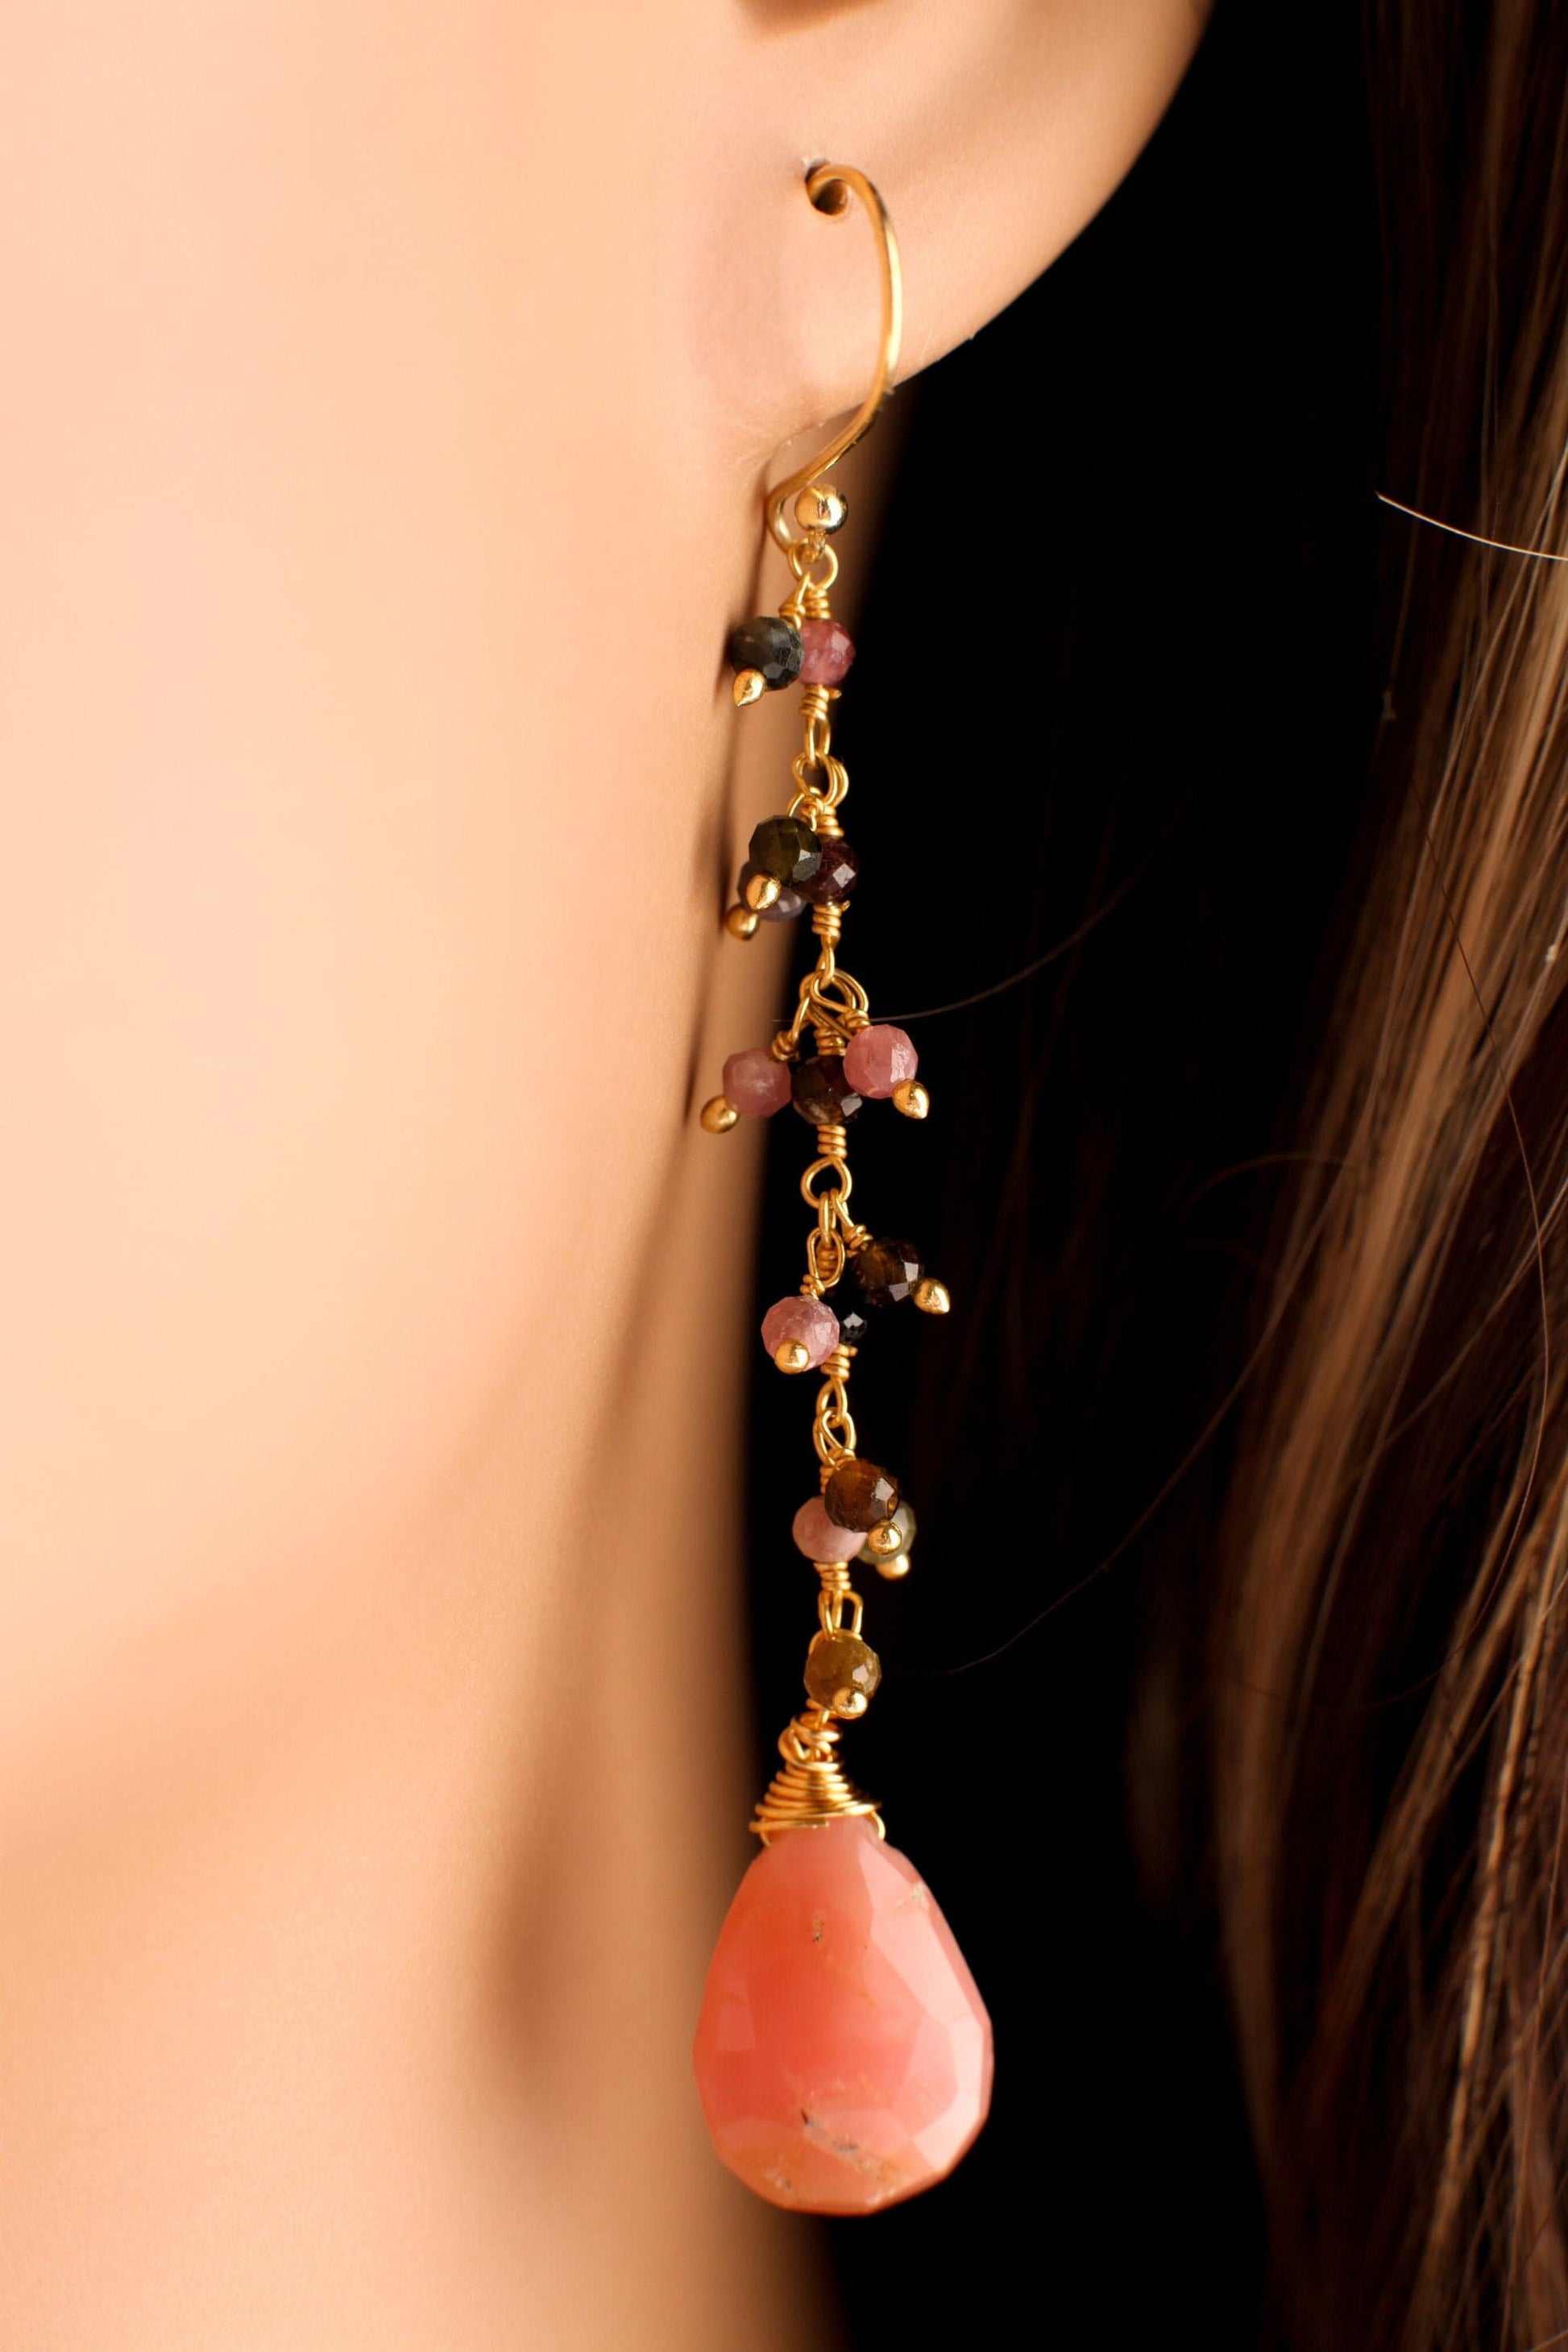 Pink Peruvian Opal Wire Wrapped Teardrop Dangling Earring, Watermelon Tourmaline Cluster Chain in Gold Vermeil Sterling Silver Ear Wire